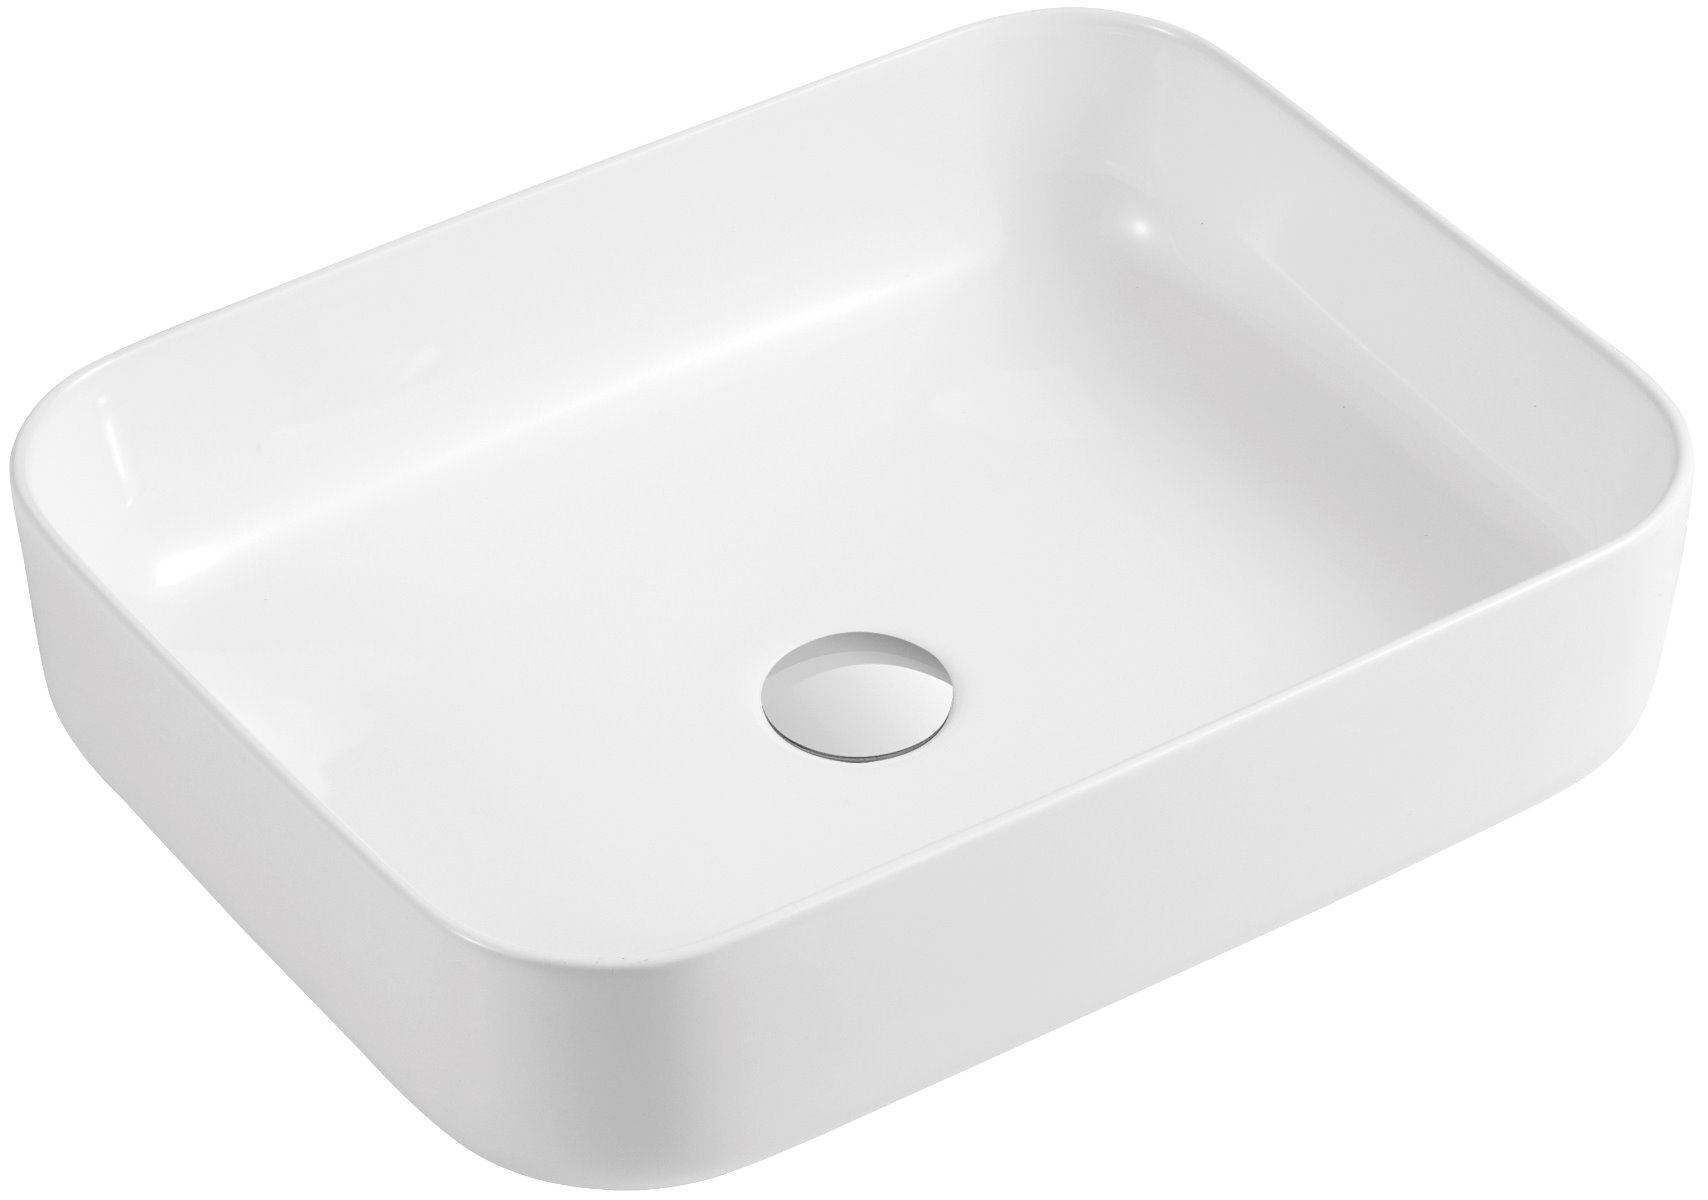 Ceramic rectangular vessel sink 20 1/10